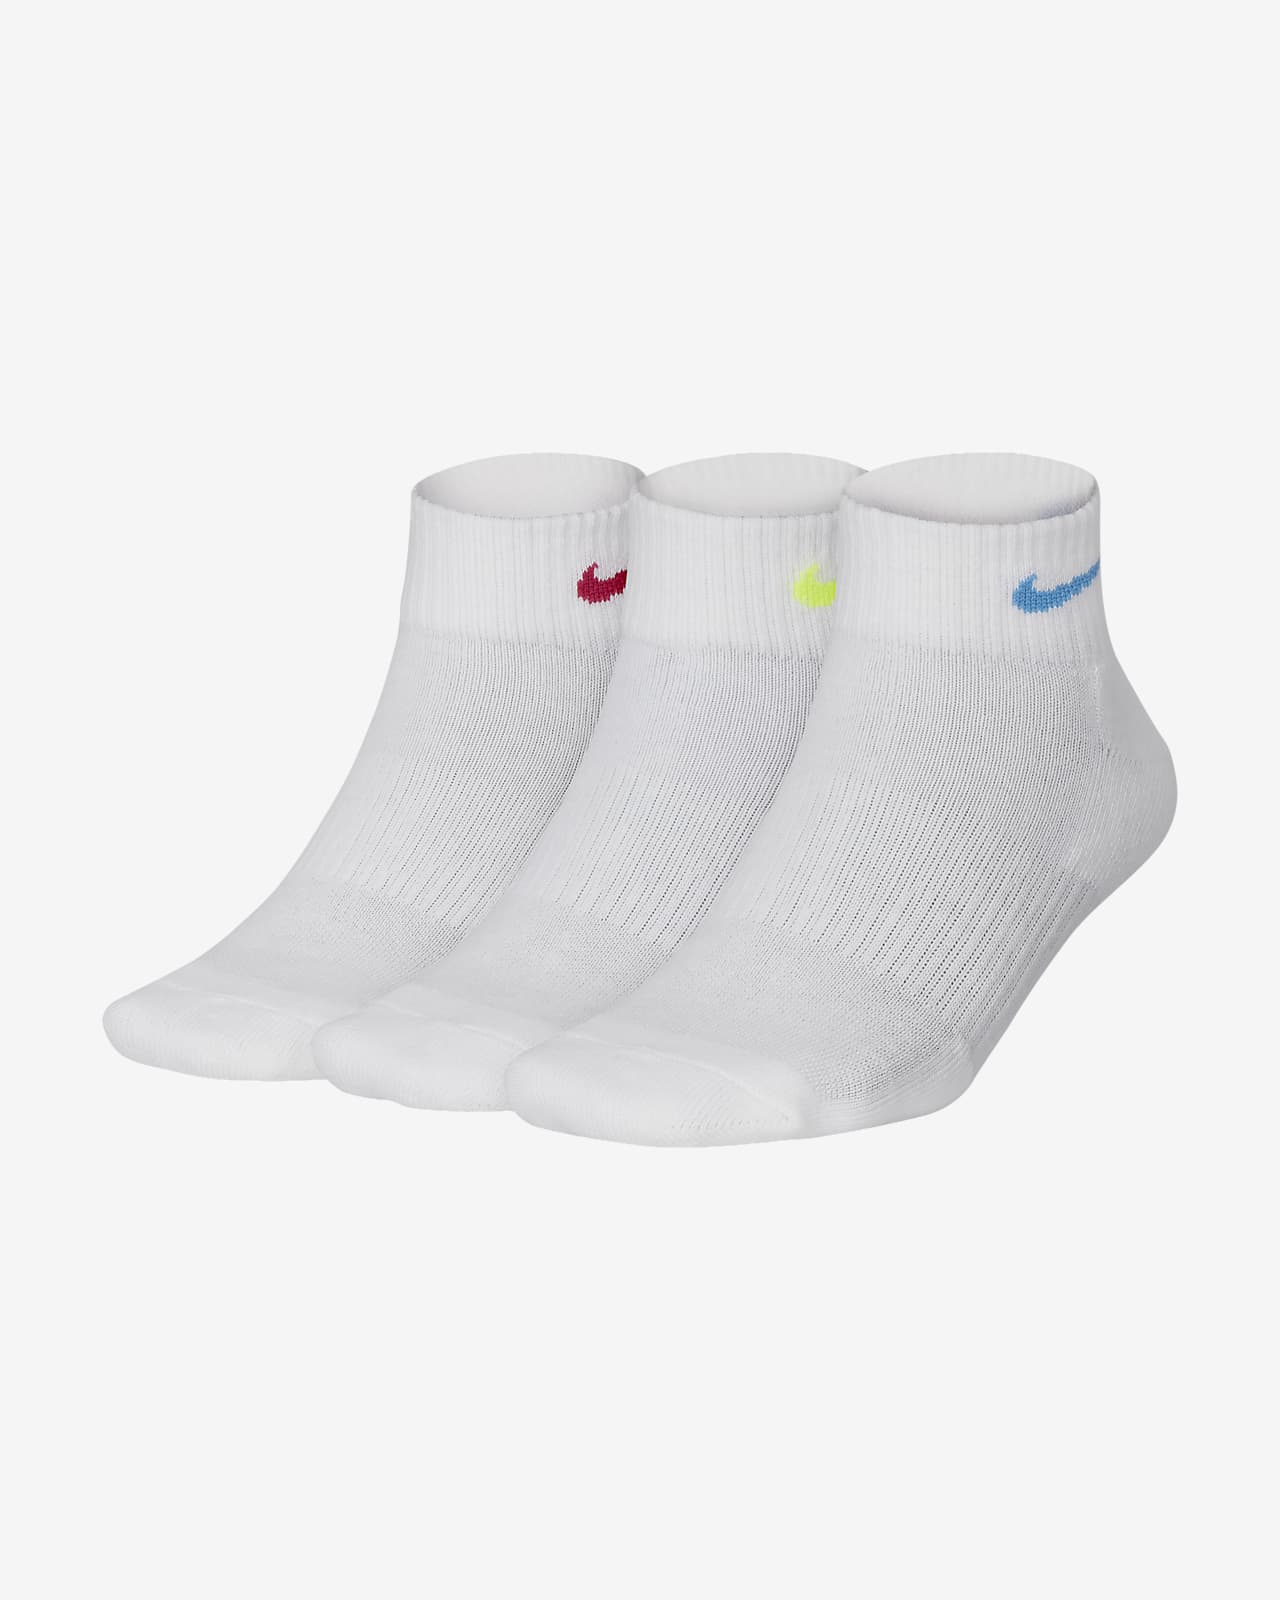 women's nike white ankle socks